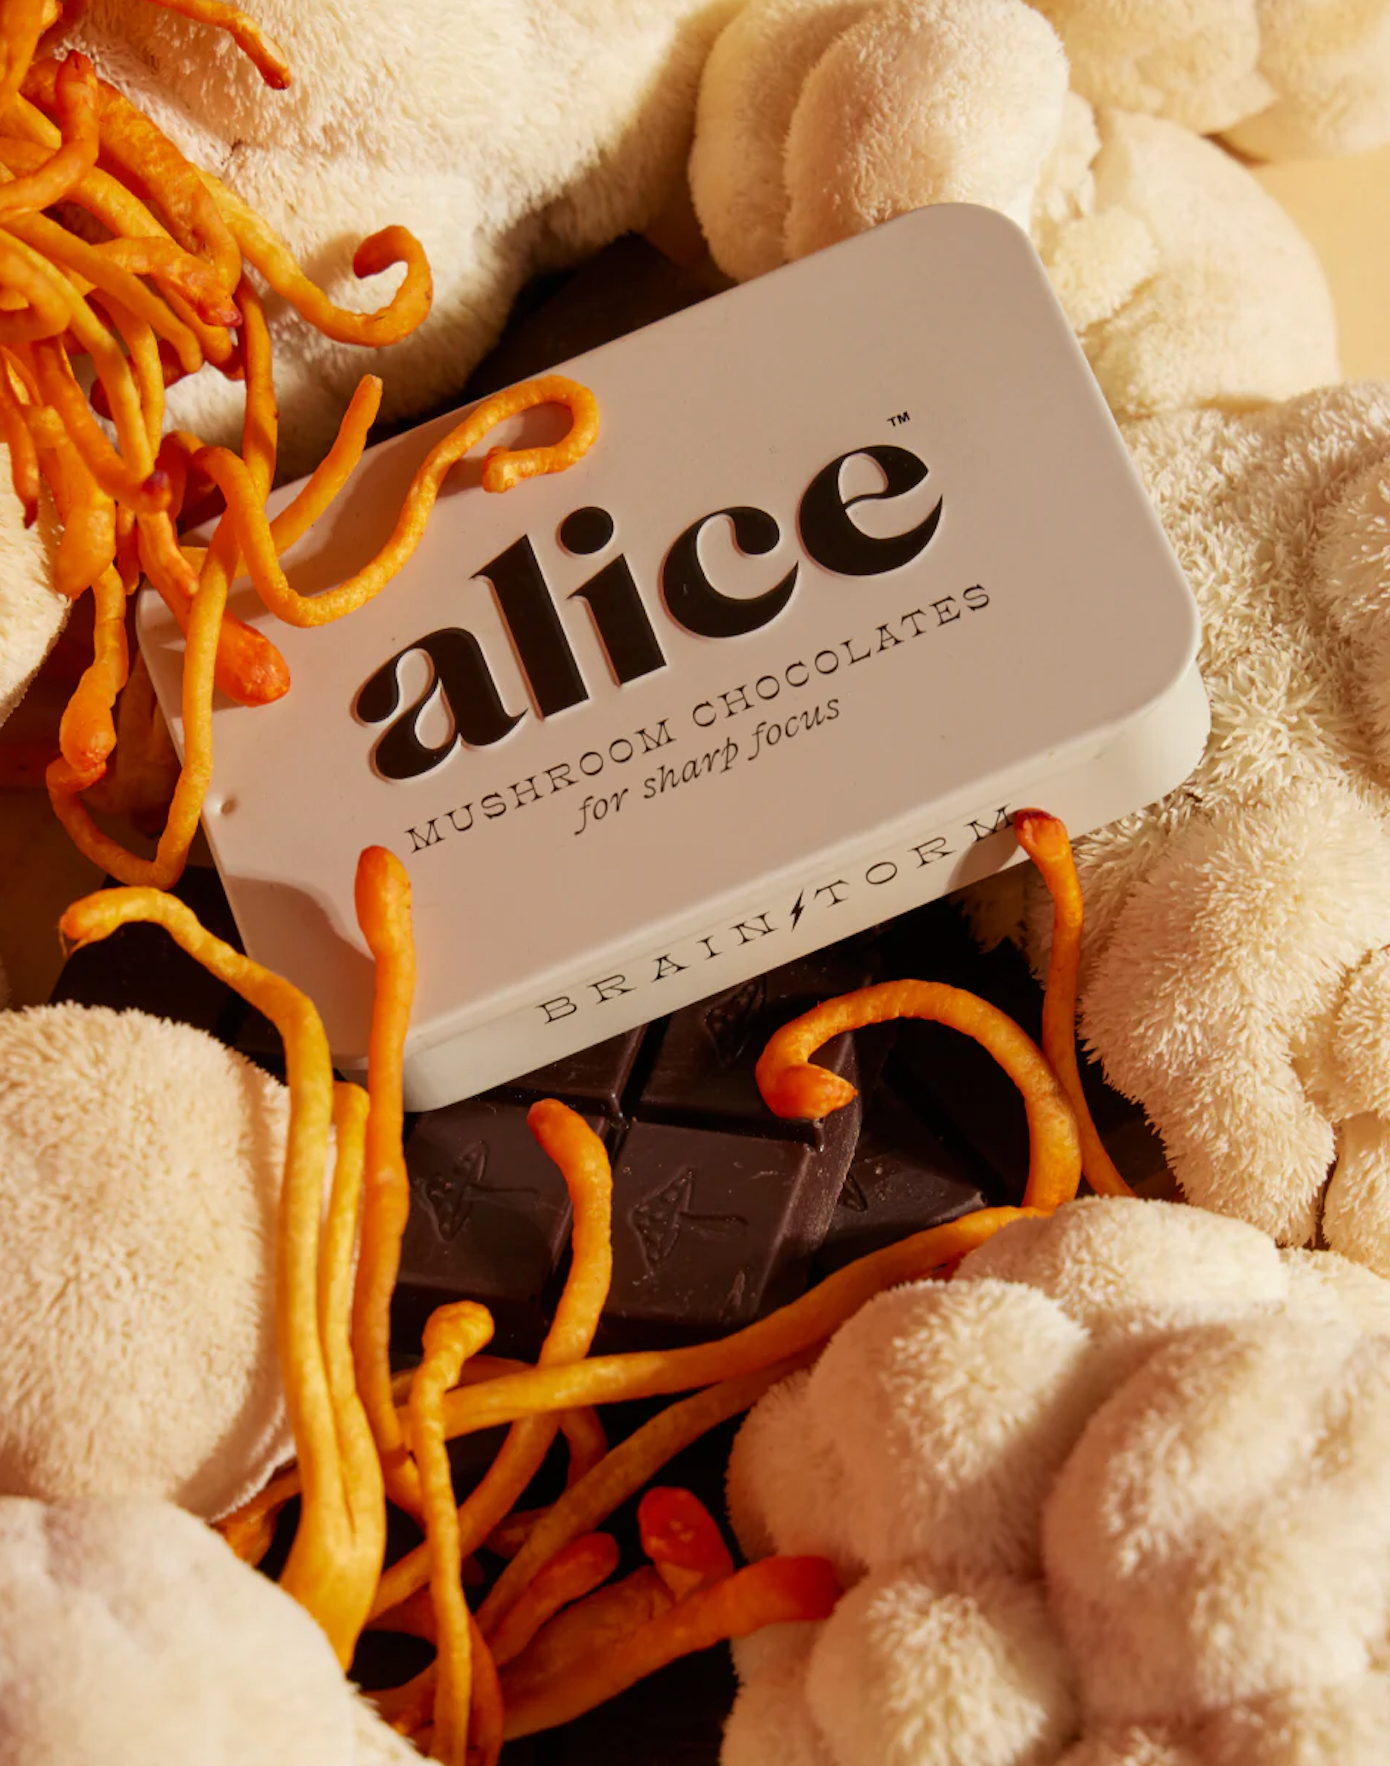 Alice Mushroom Chocolates